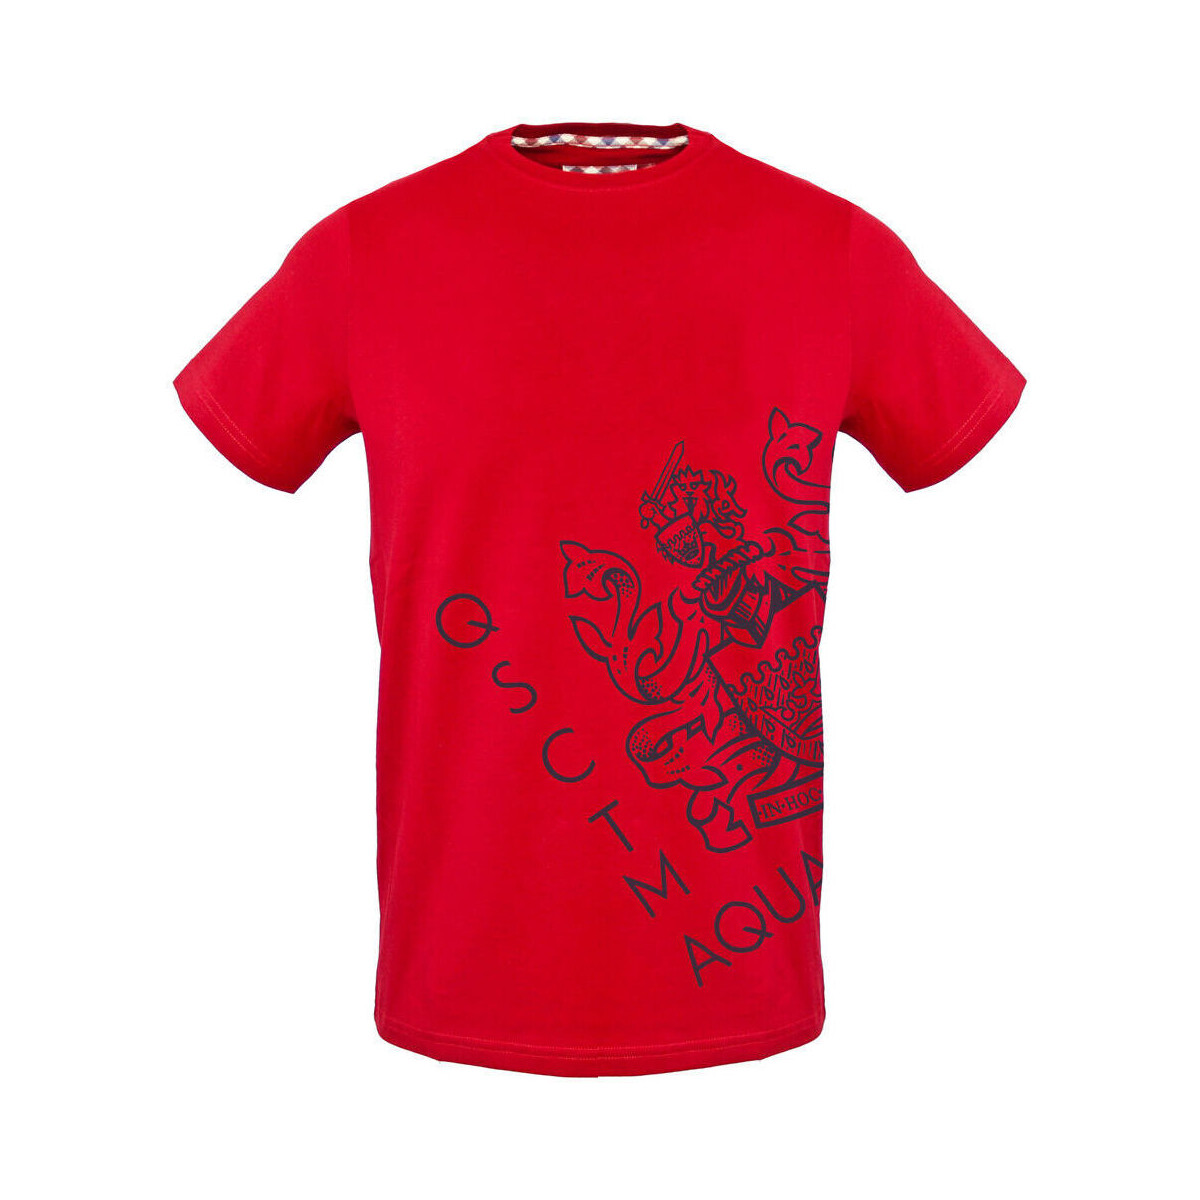 Textil Homem Eterna langarm hemd modern fit performance shirt stretch rot weiss kariert - tsia115 Vermelho